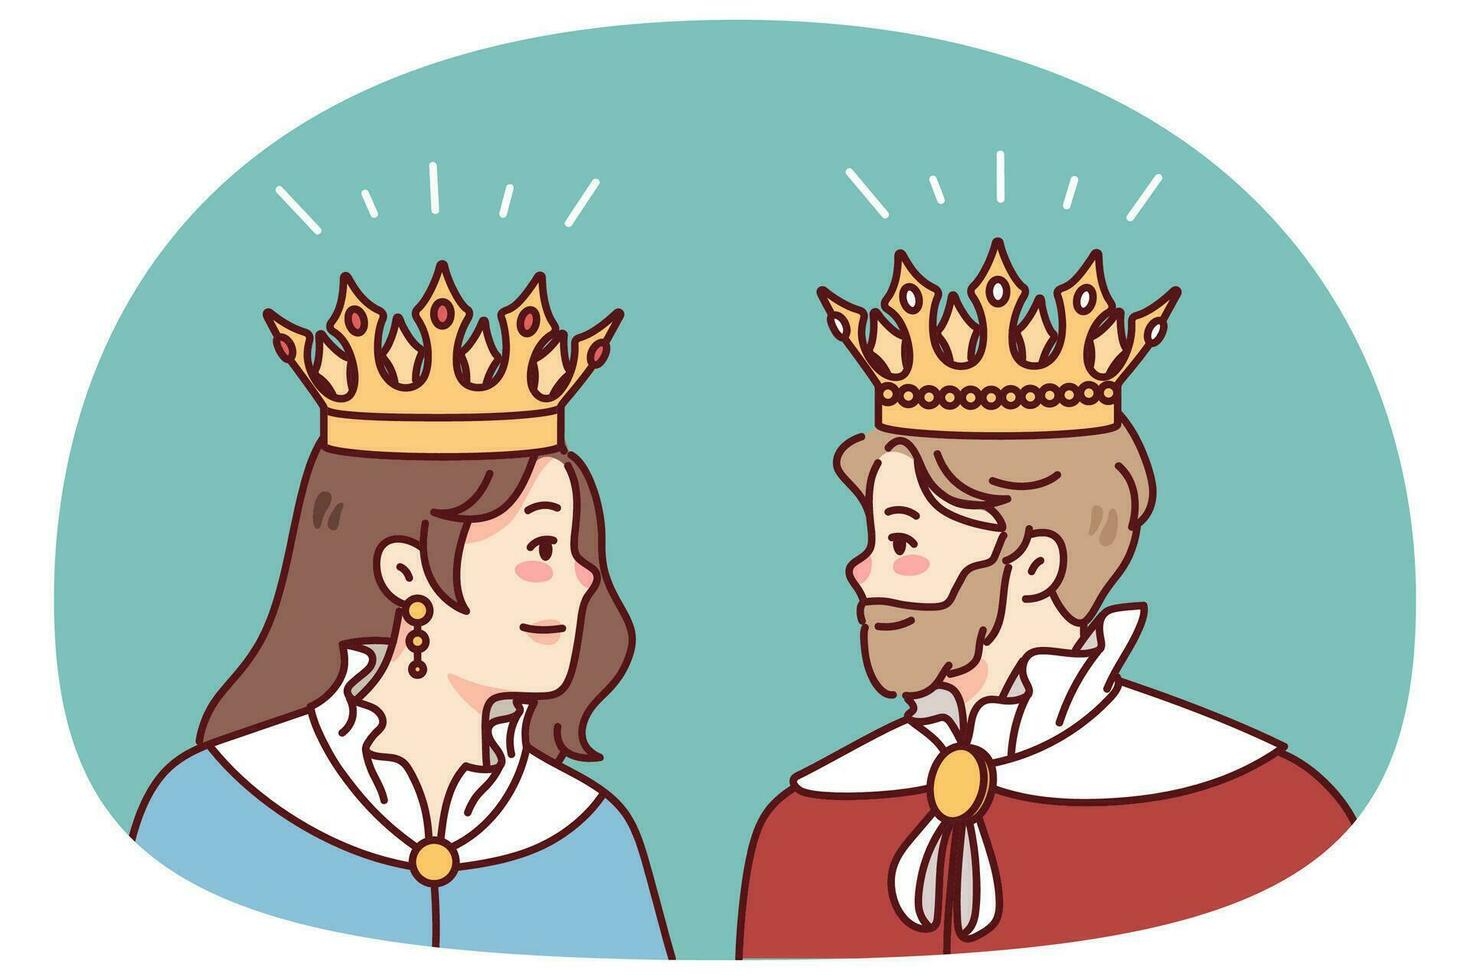 kung och drottning i mantlar och kronor se på varje Övrig. medlemmar av kunglig familj i klädnader. royalty och monarki. vektor illustration.